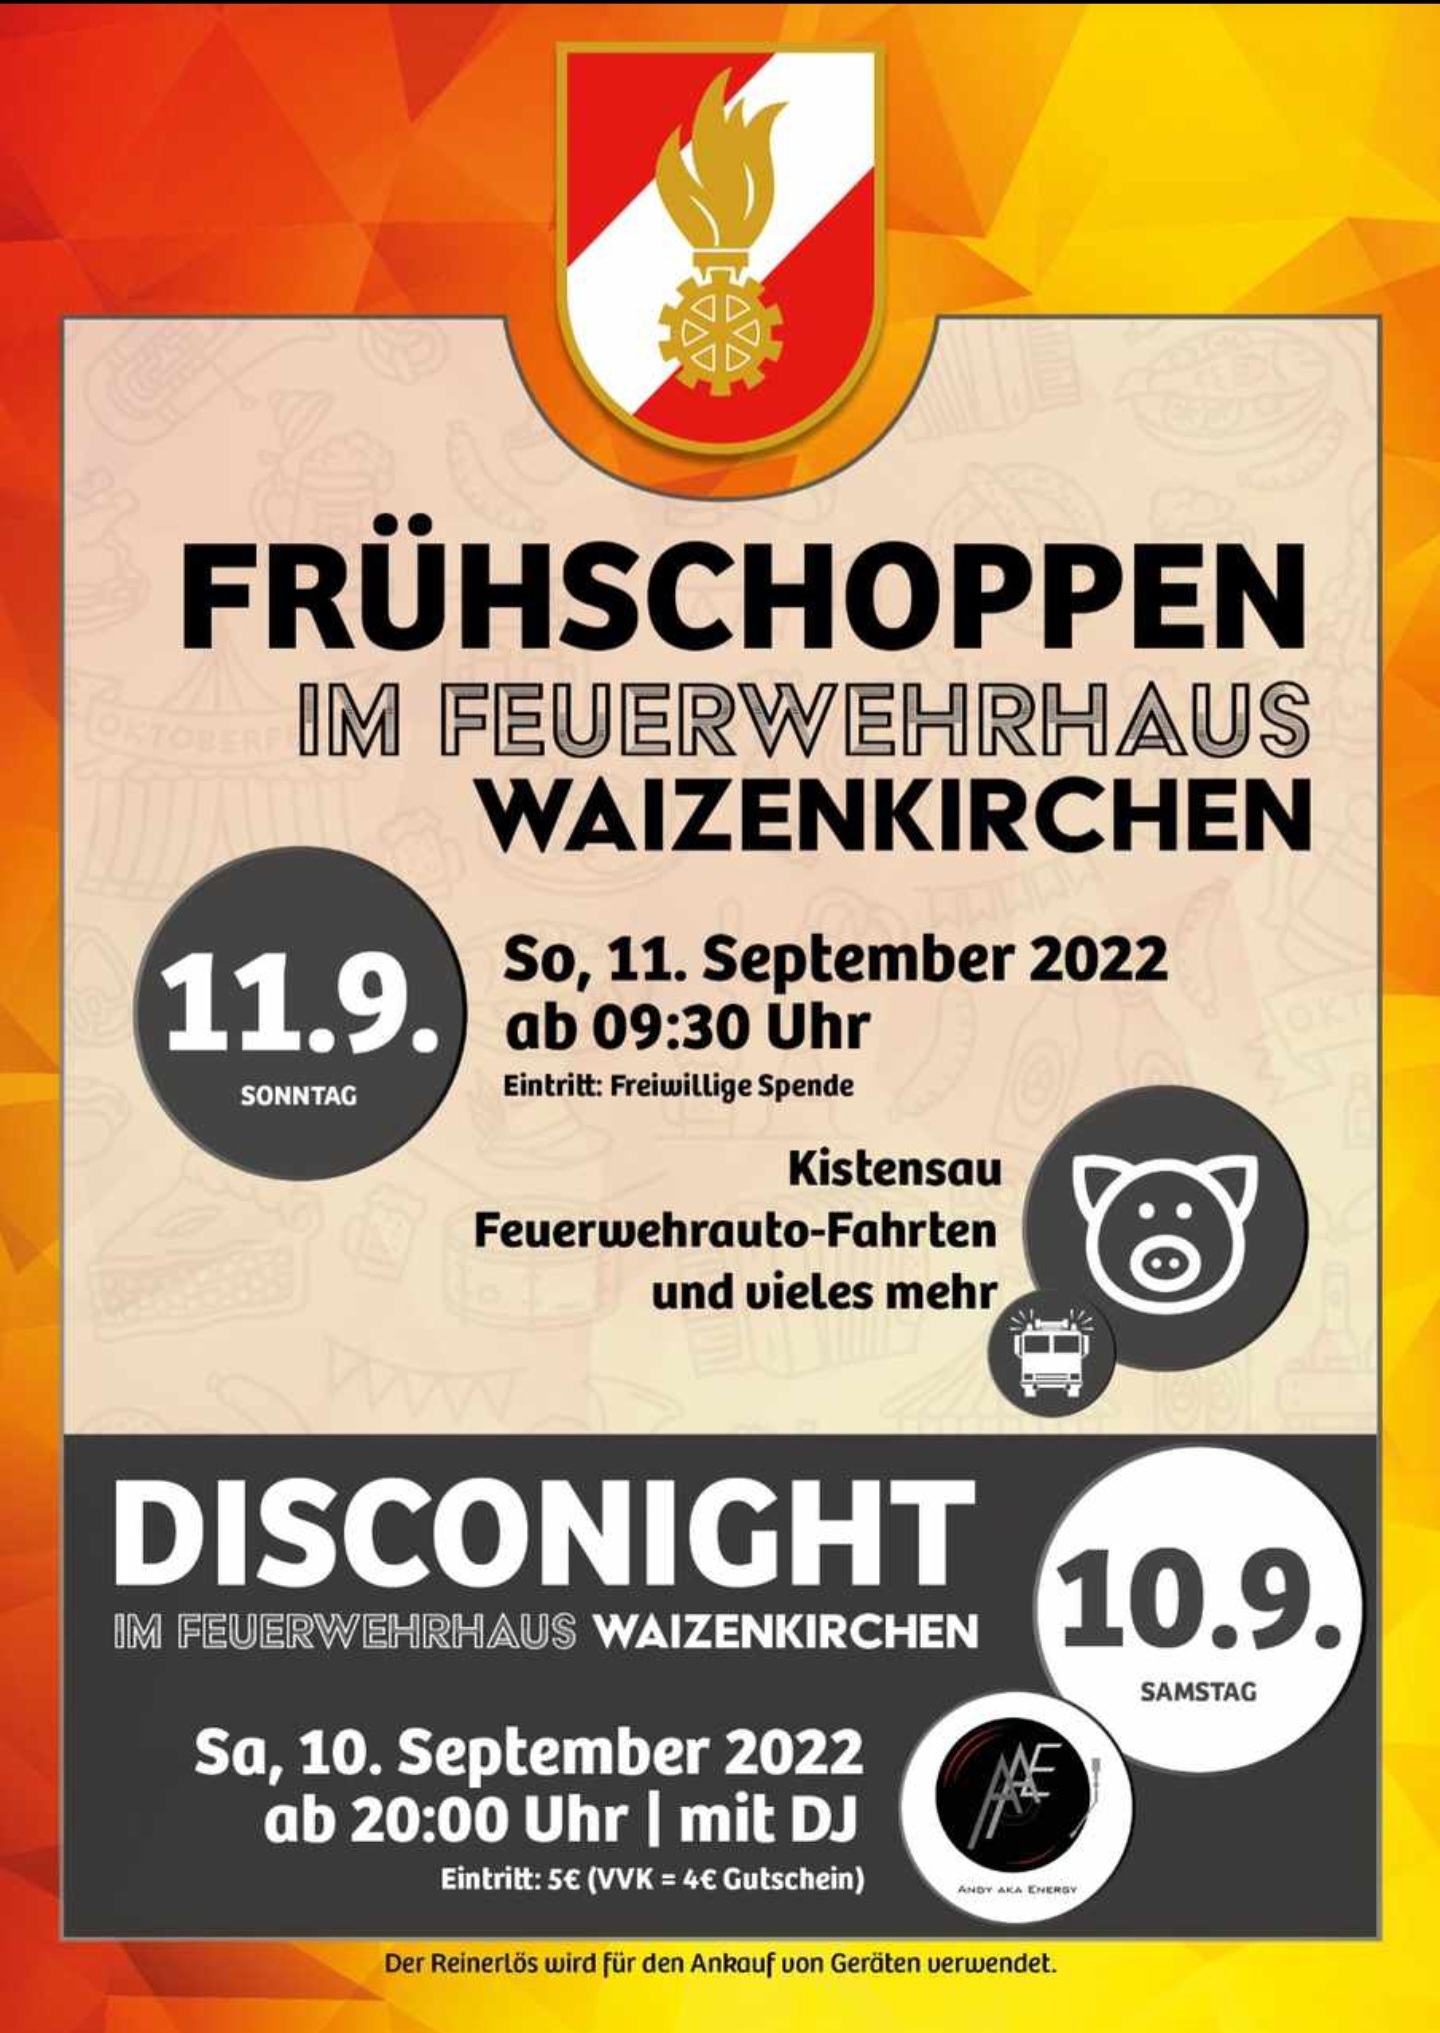 Disco Frühschoppen Waizenkirchen